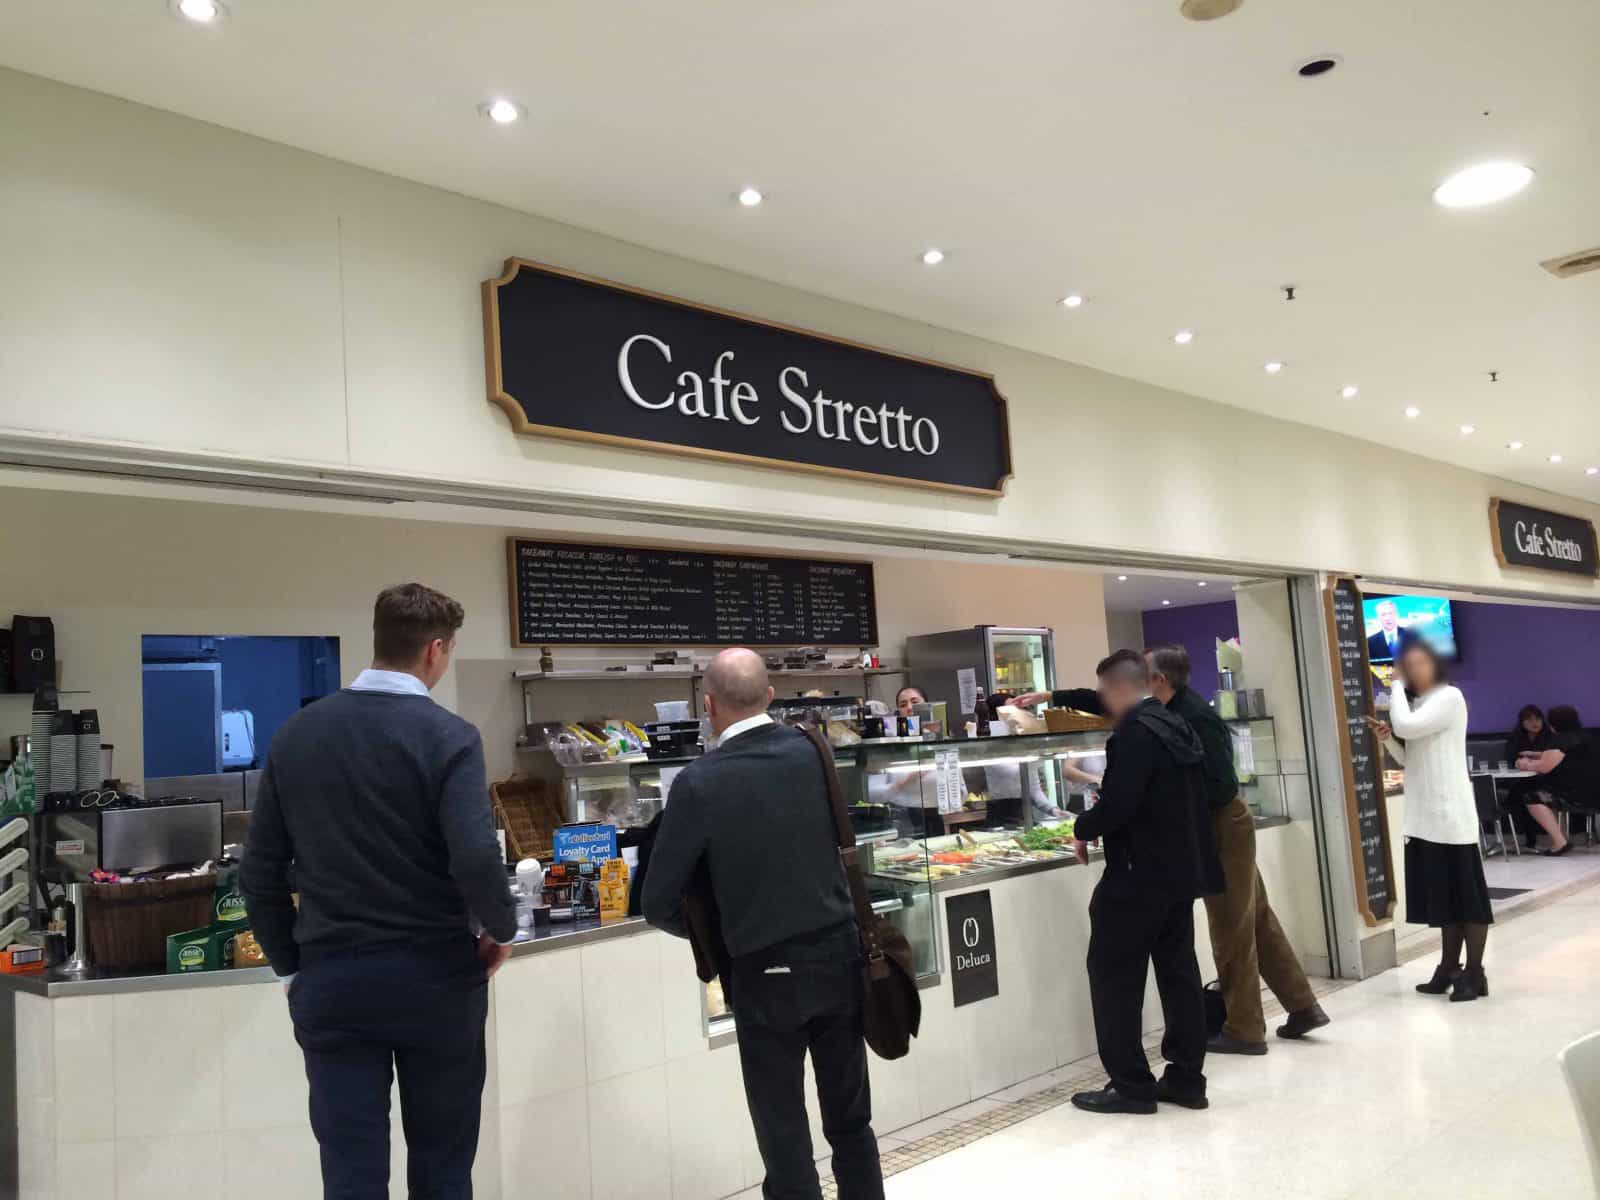 Cafe Stretto